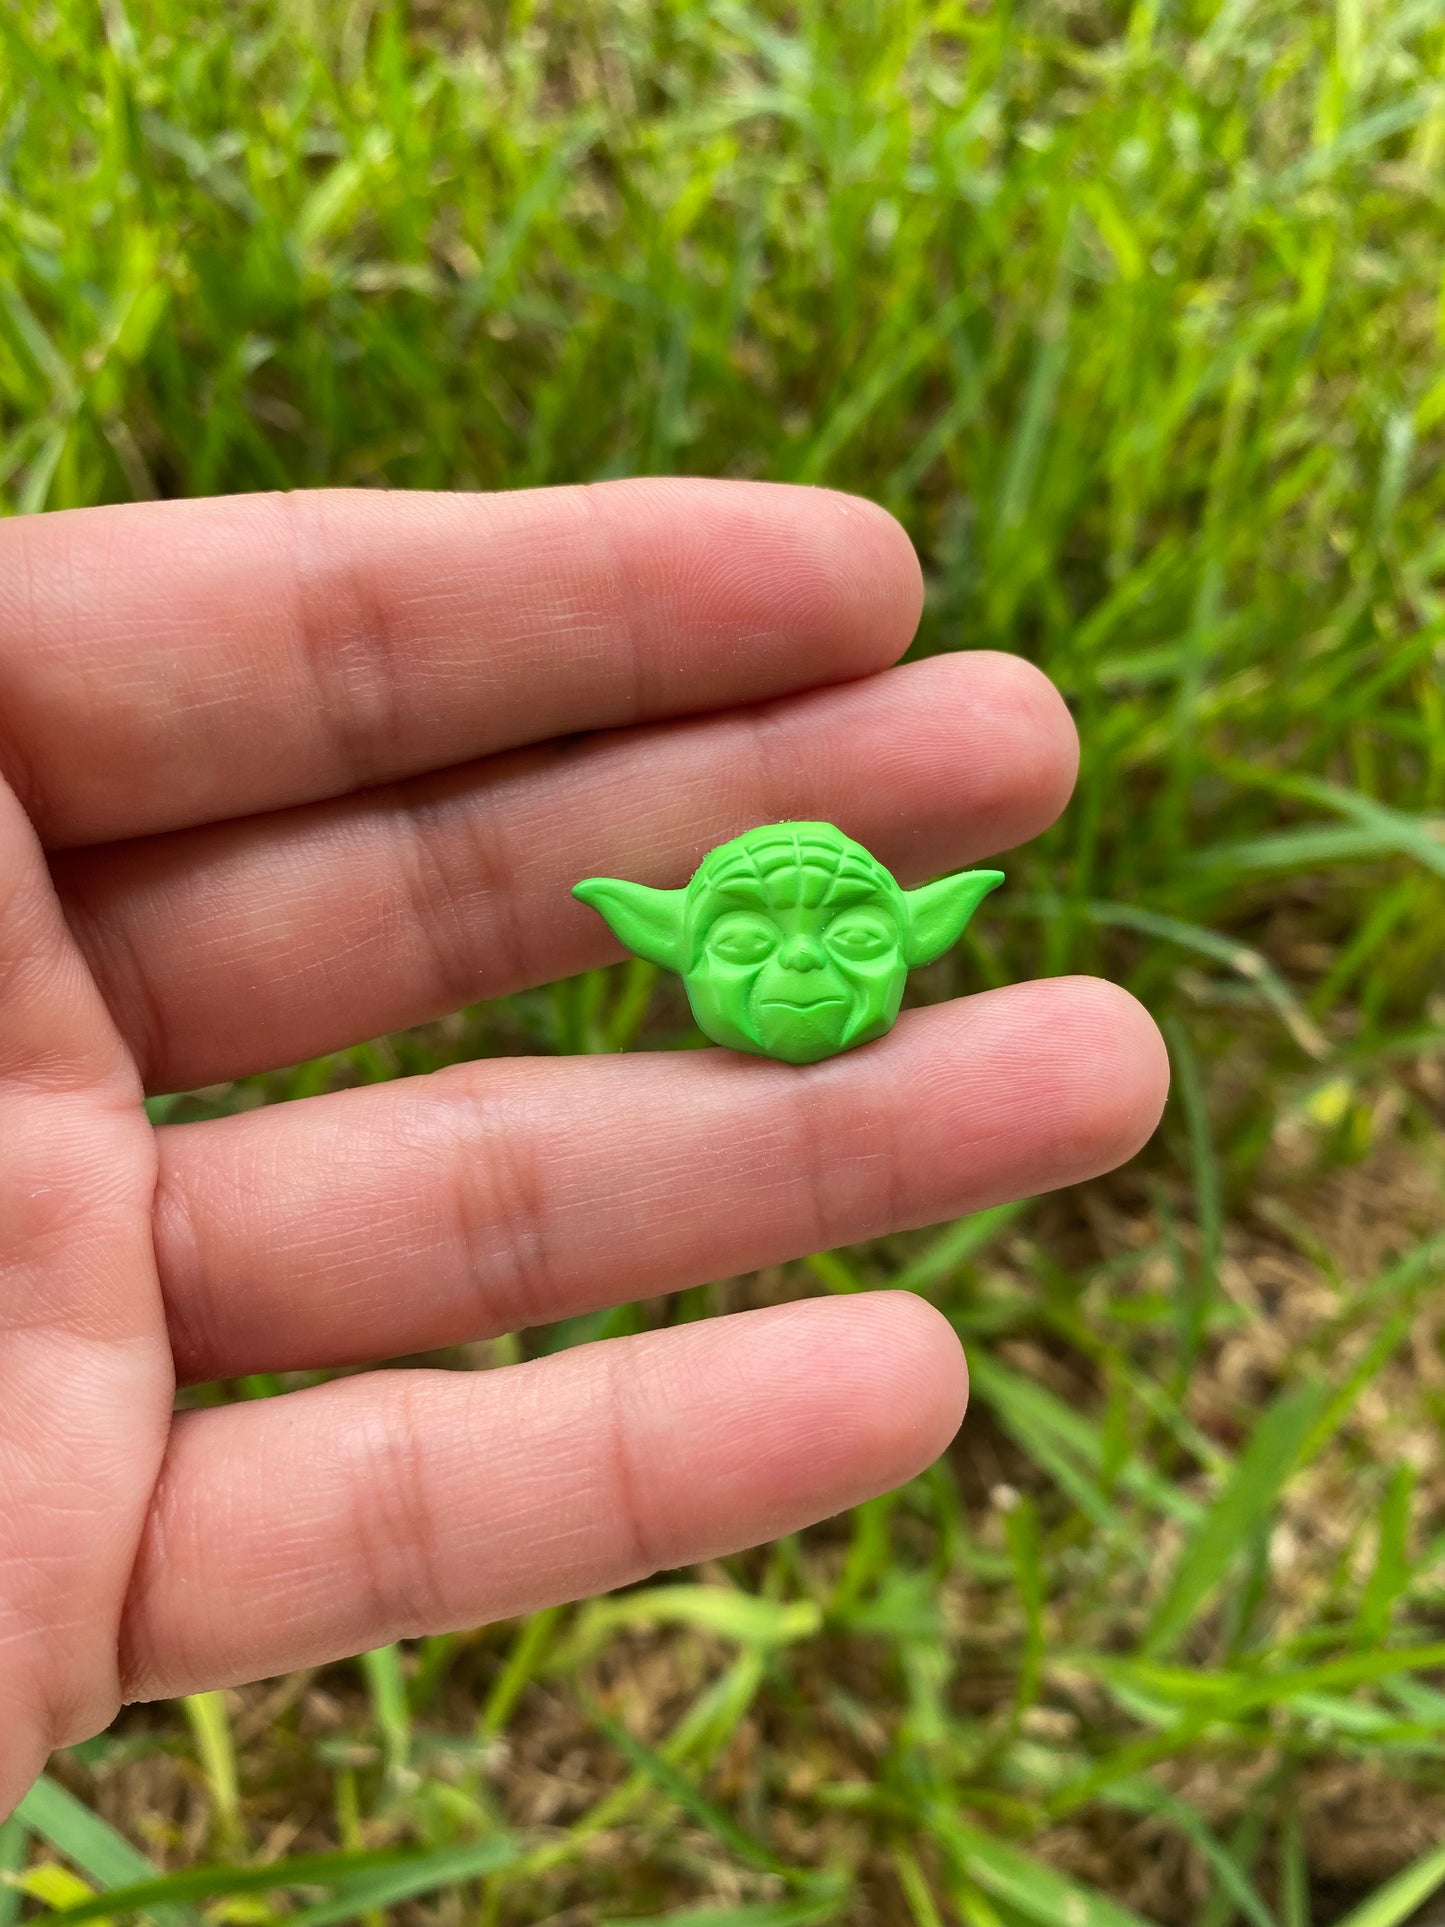 Star Wars Yoda Pin Gift